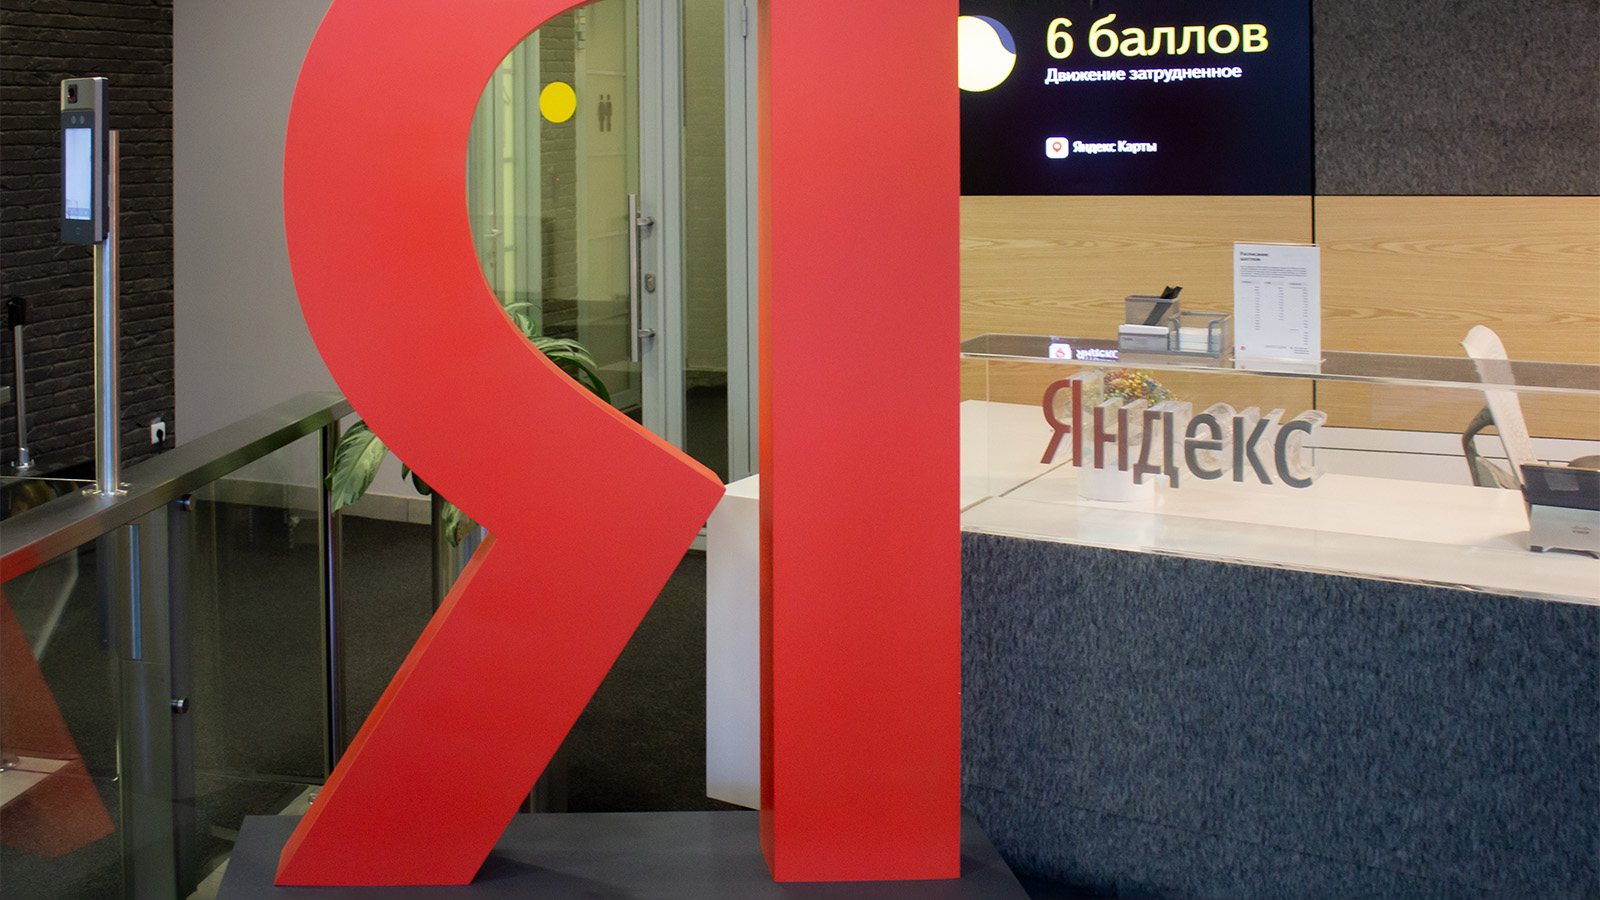 Яндекс объявил о предварительном намерении изменить управление и разделить активы